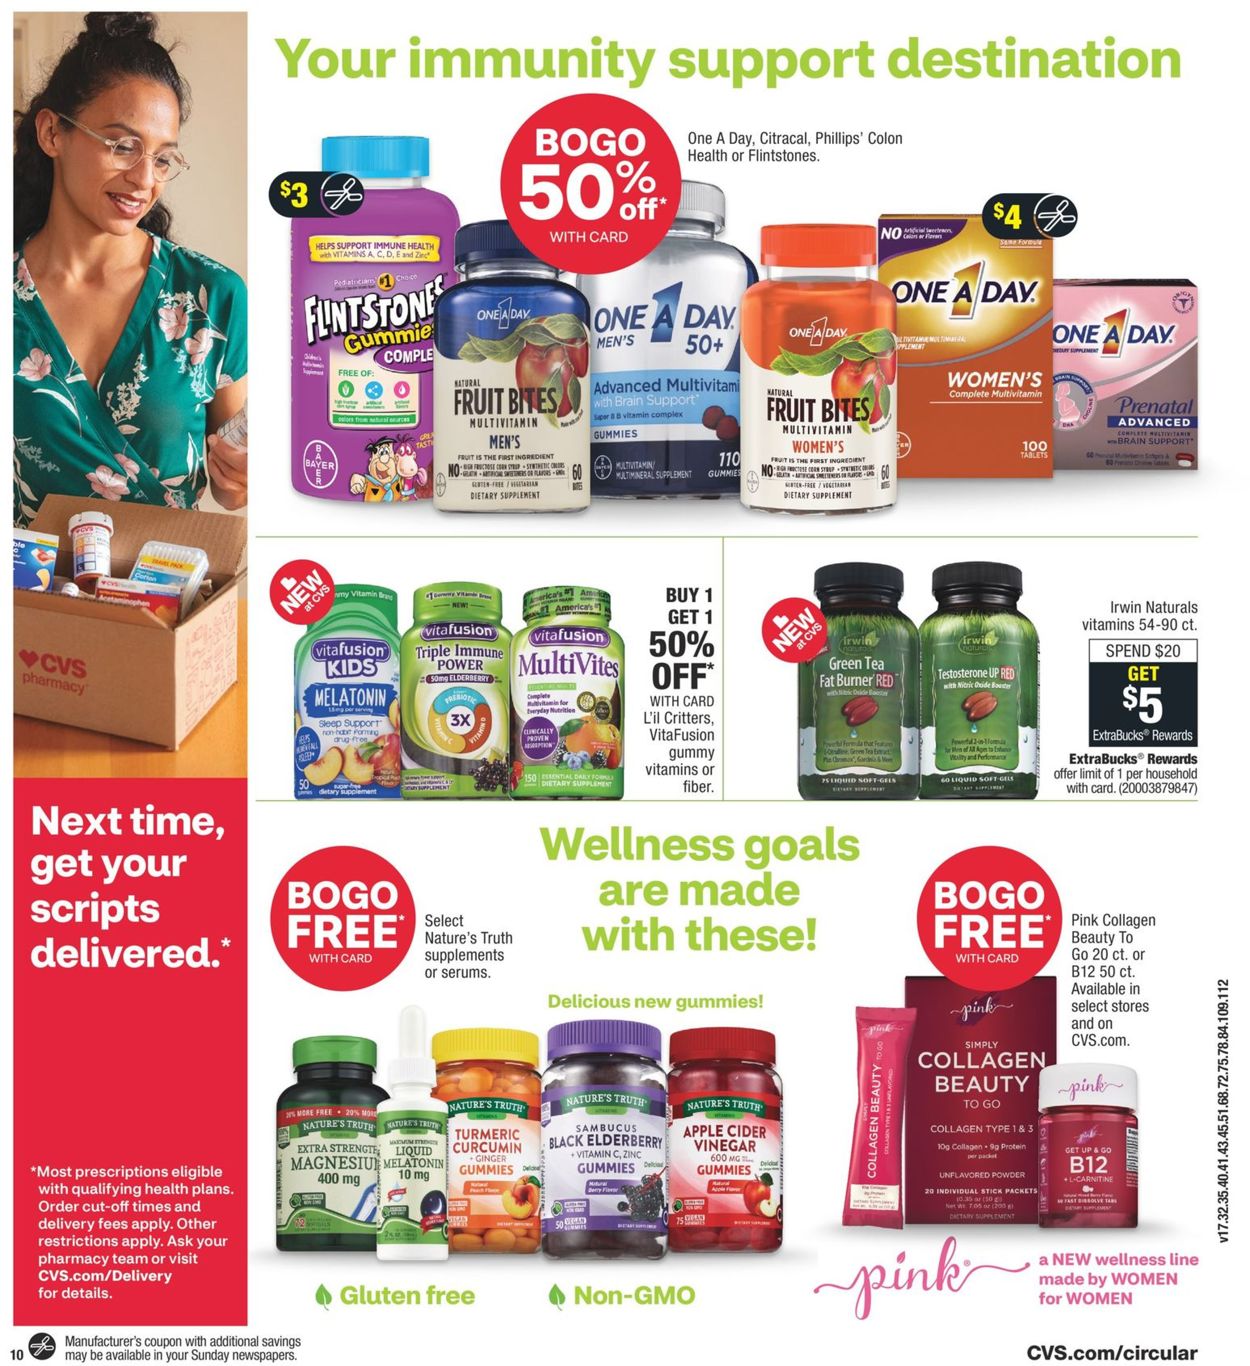 Catalogue CVS Pharmacy from 09/13/2020